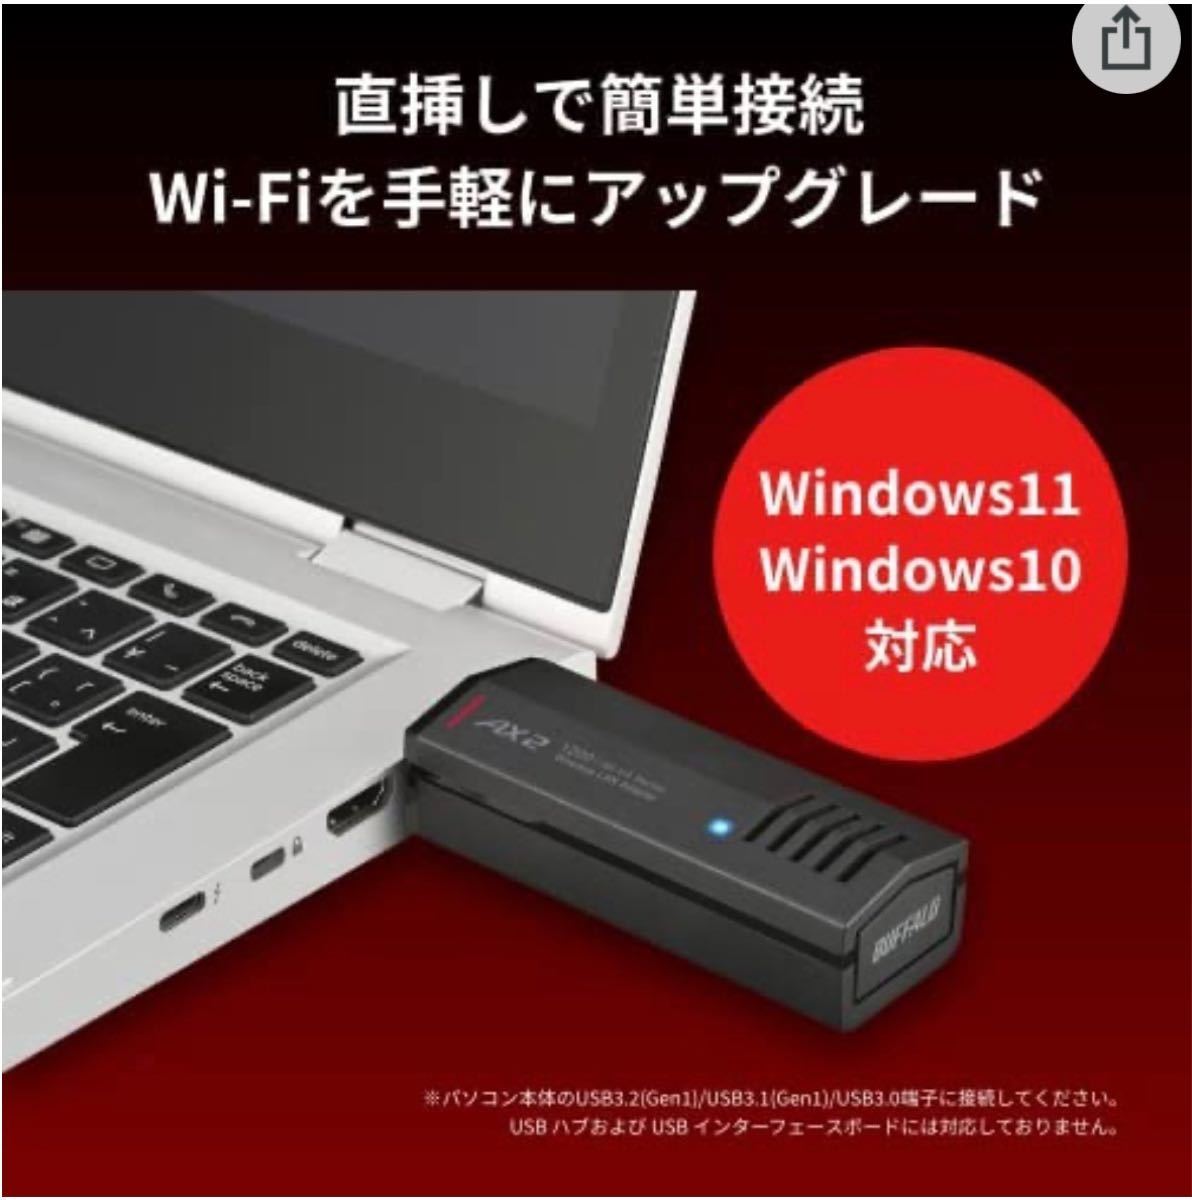 パソコンを最新規格「Wi-Fi 6(11ax)」にアップグレード USB端子に装着して高速化バッファローWI-U3-1200AX2